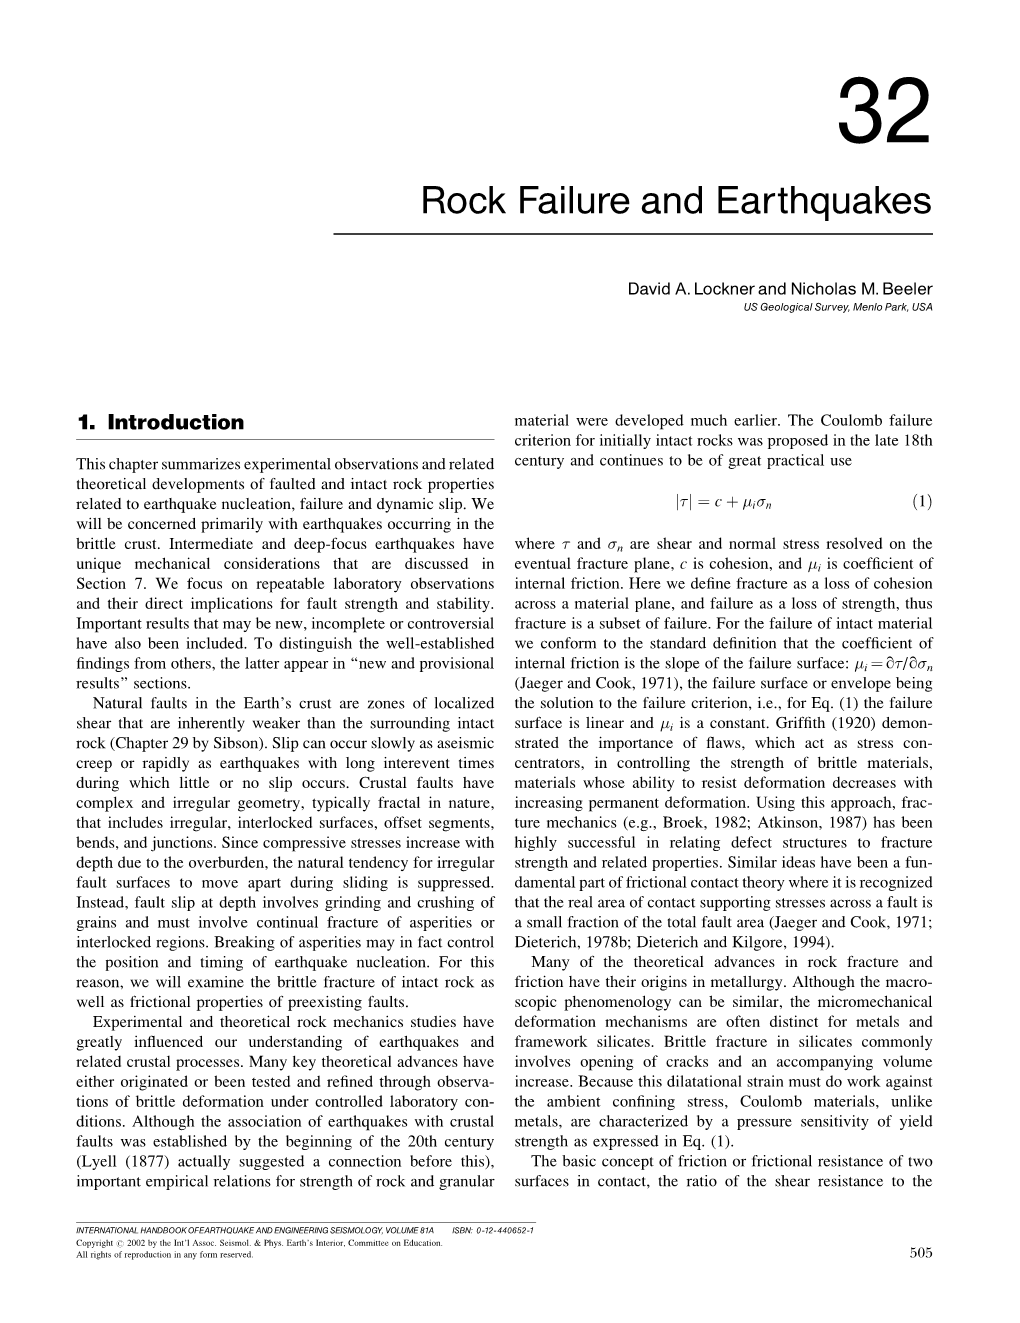 Rock Failure and Earthquakes